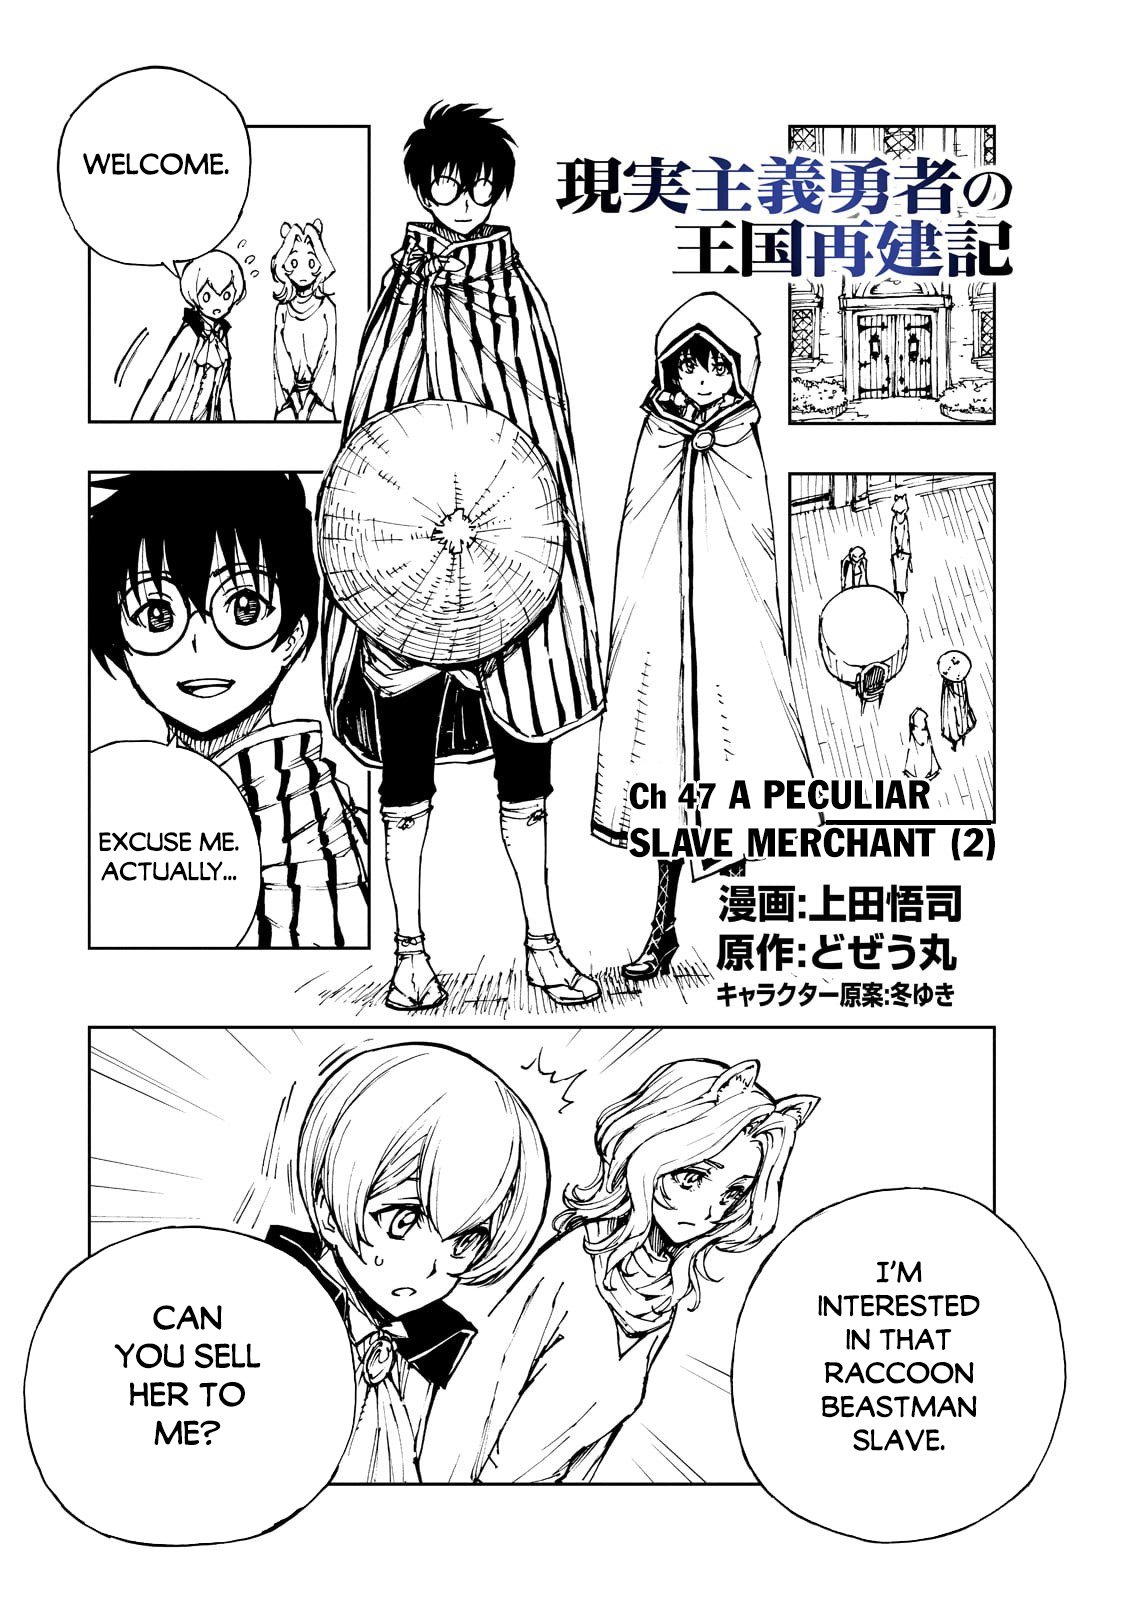 Read Genjitsushugisha no Oukokukaizouki Manga English [New Chapters] Online  Free - MangaClash